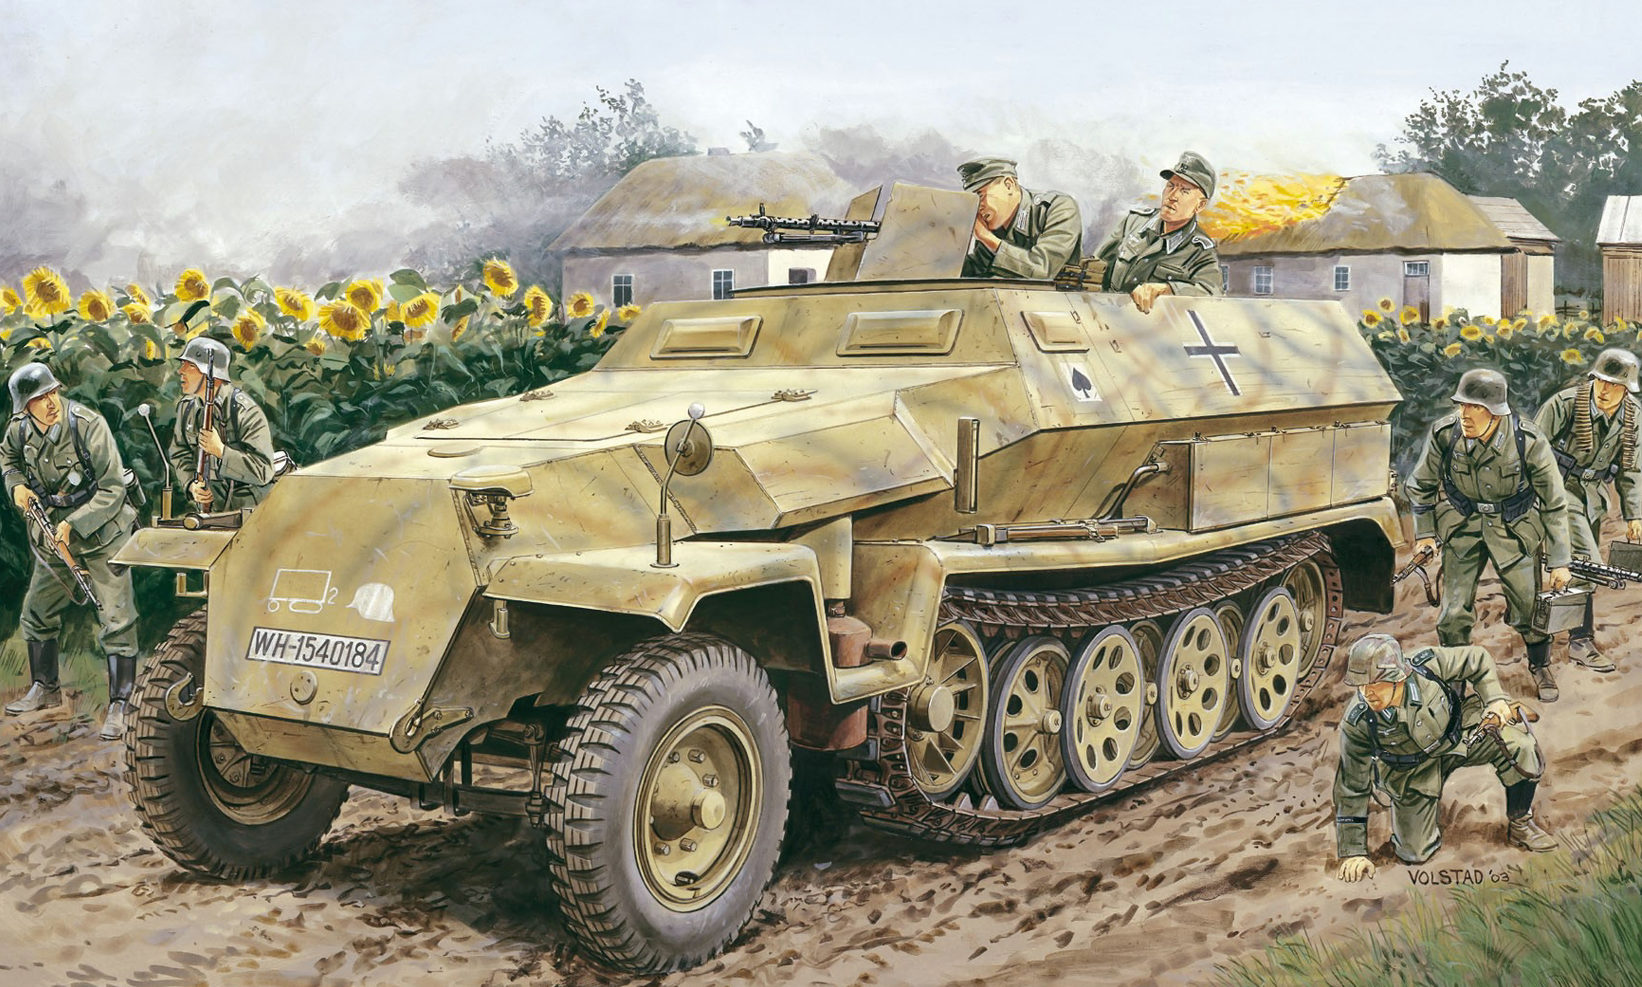 Volstad Ronald. Полугусеничный бронетранспортер Sd.Kfz. 251 Ausf. C.